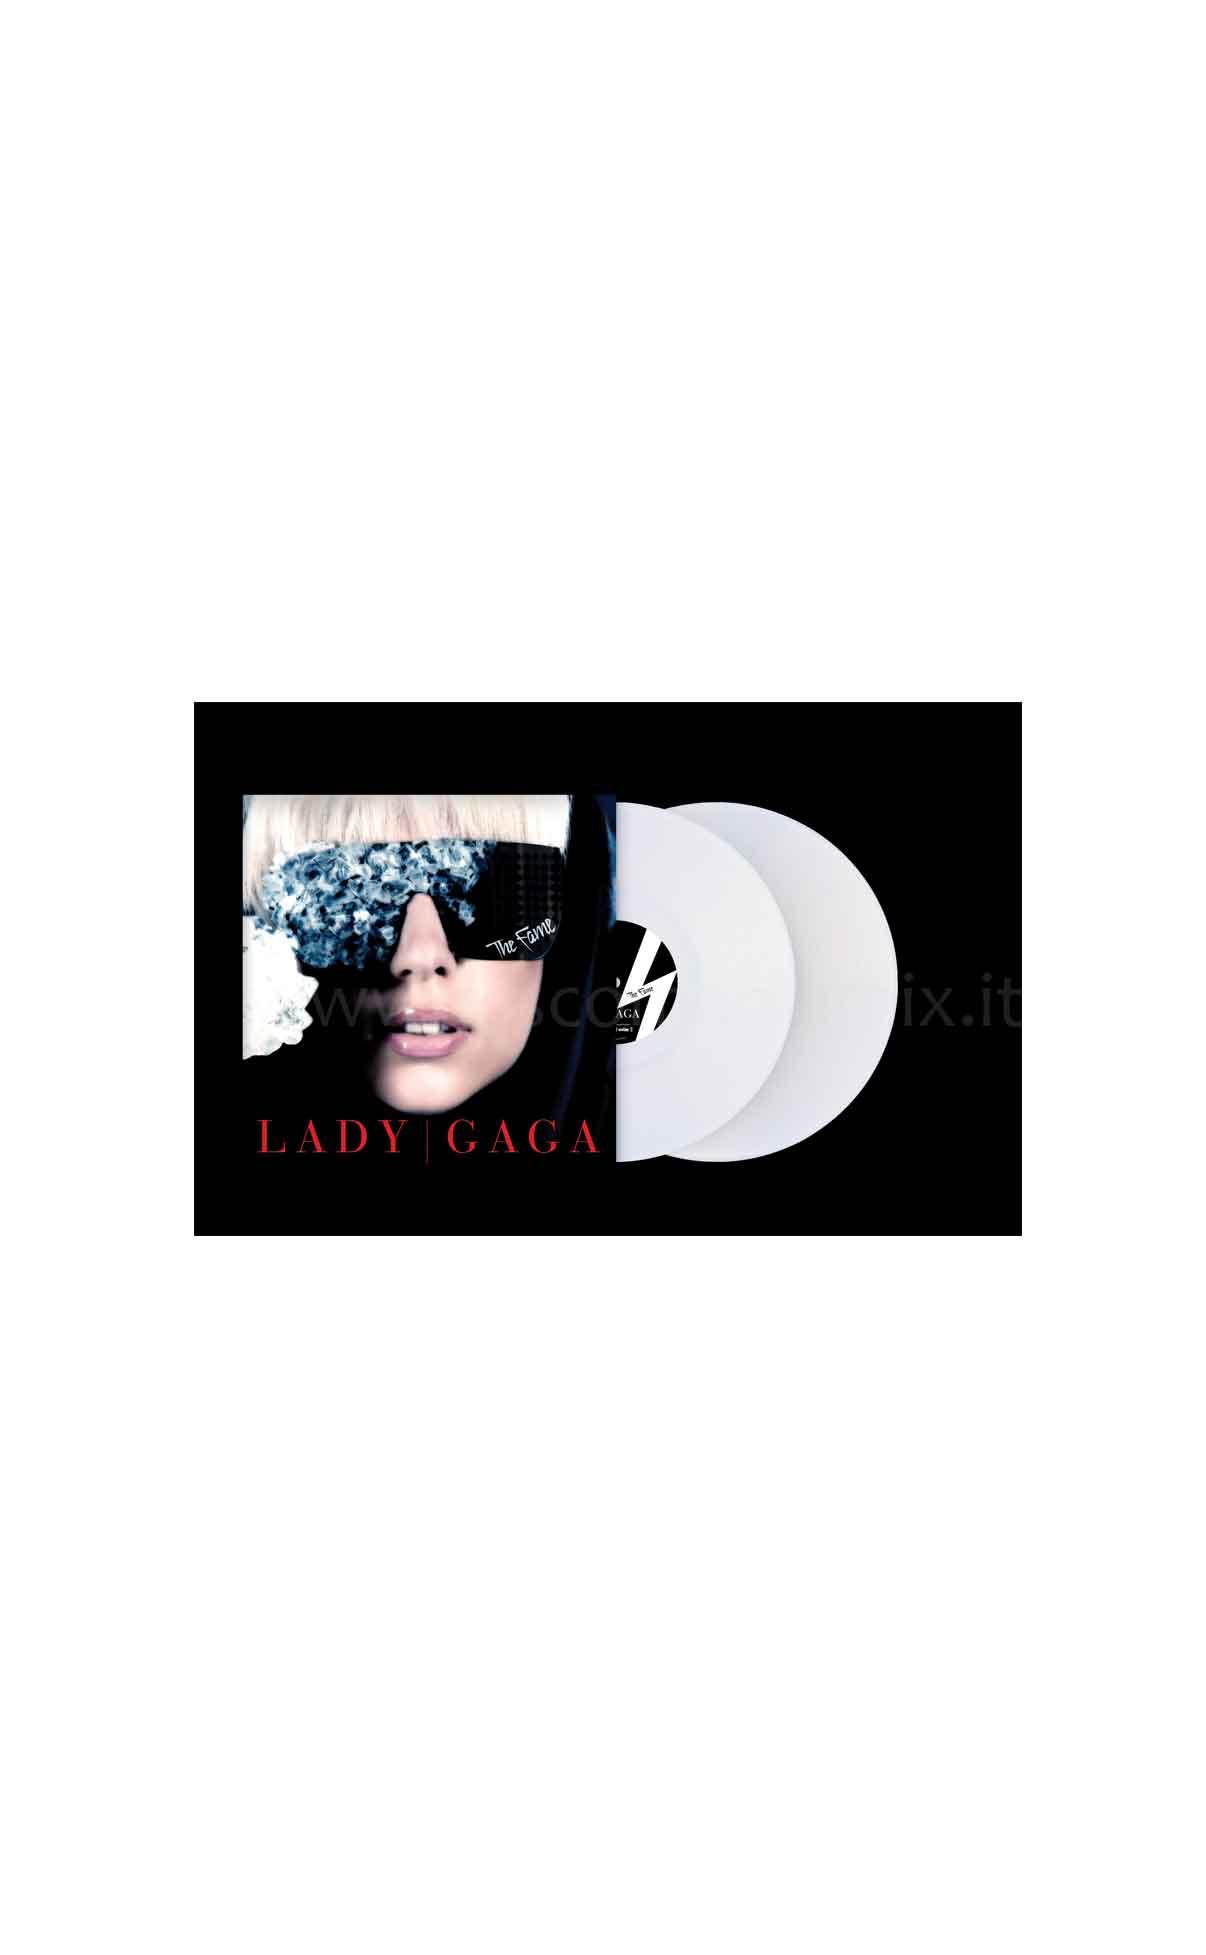 Lady Gaga - The Fame Vinile Bianco; - Discomania Mix